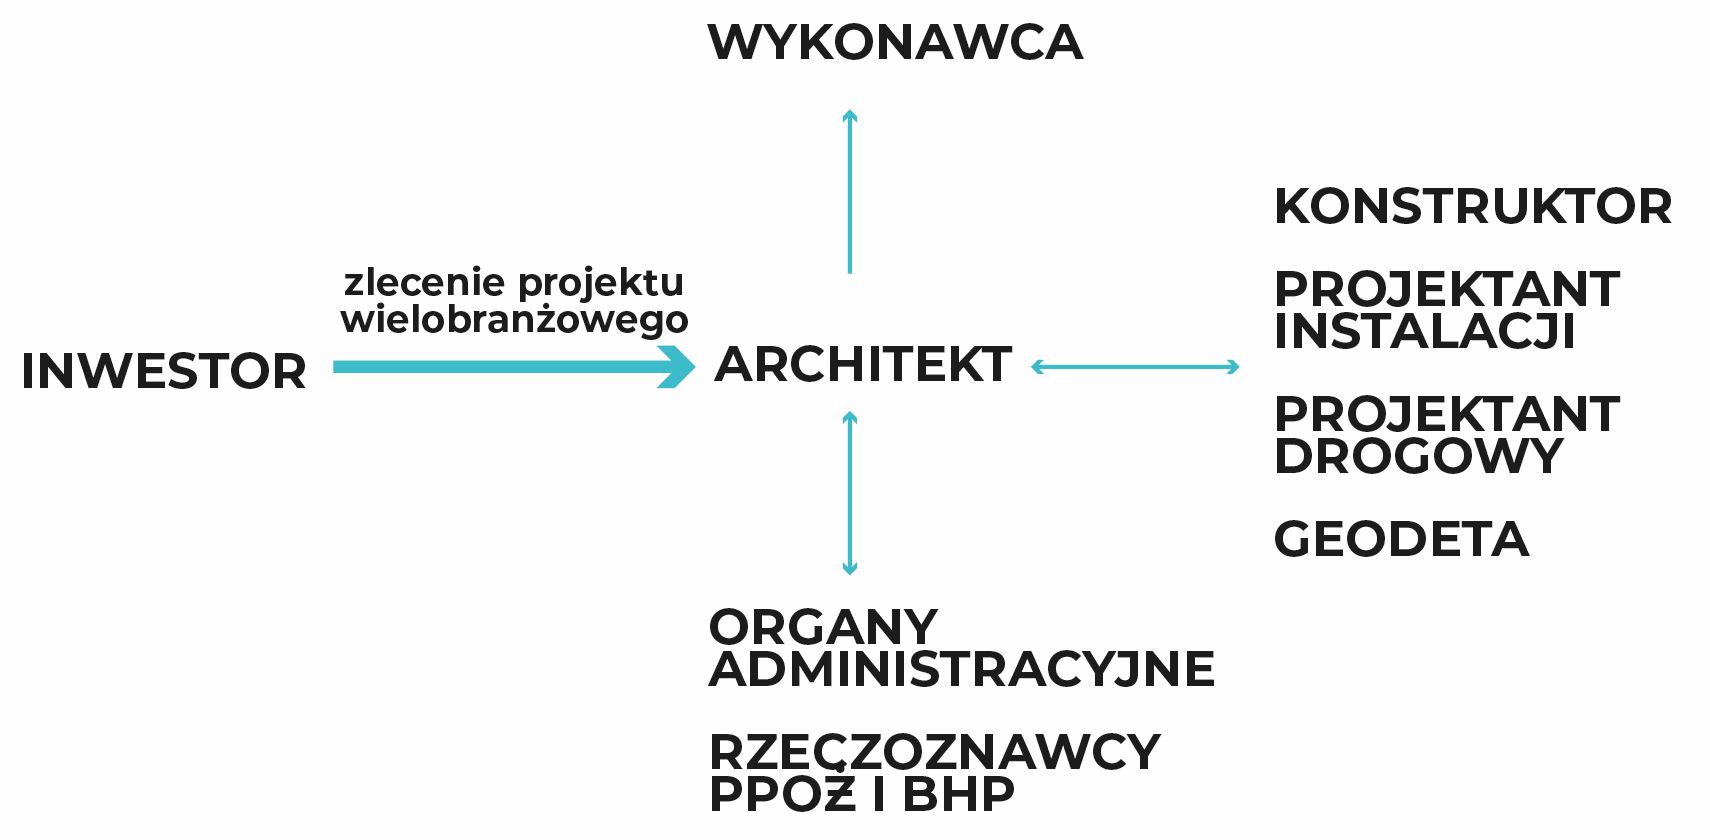 Architekt i inne strony projektowe